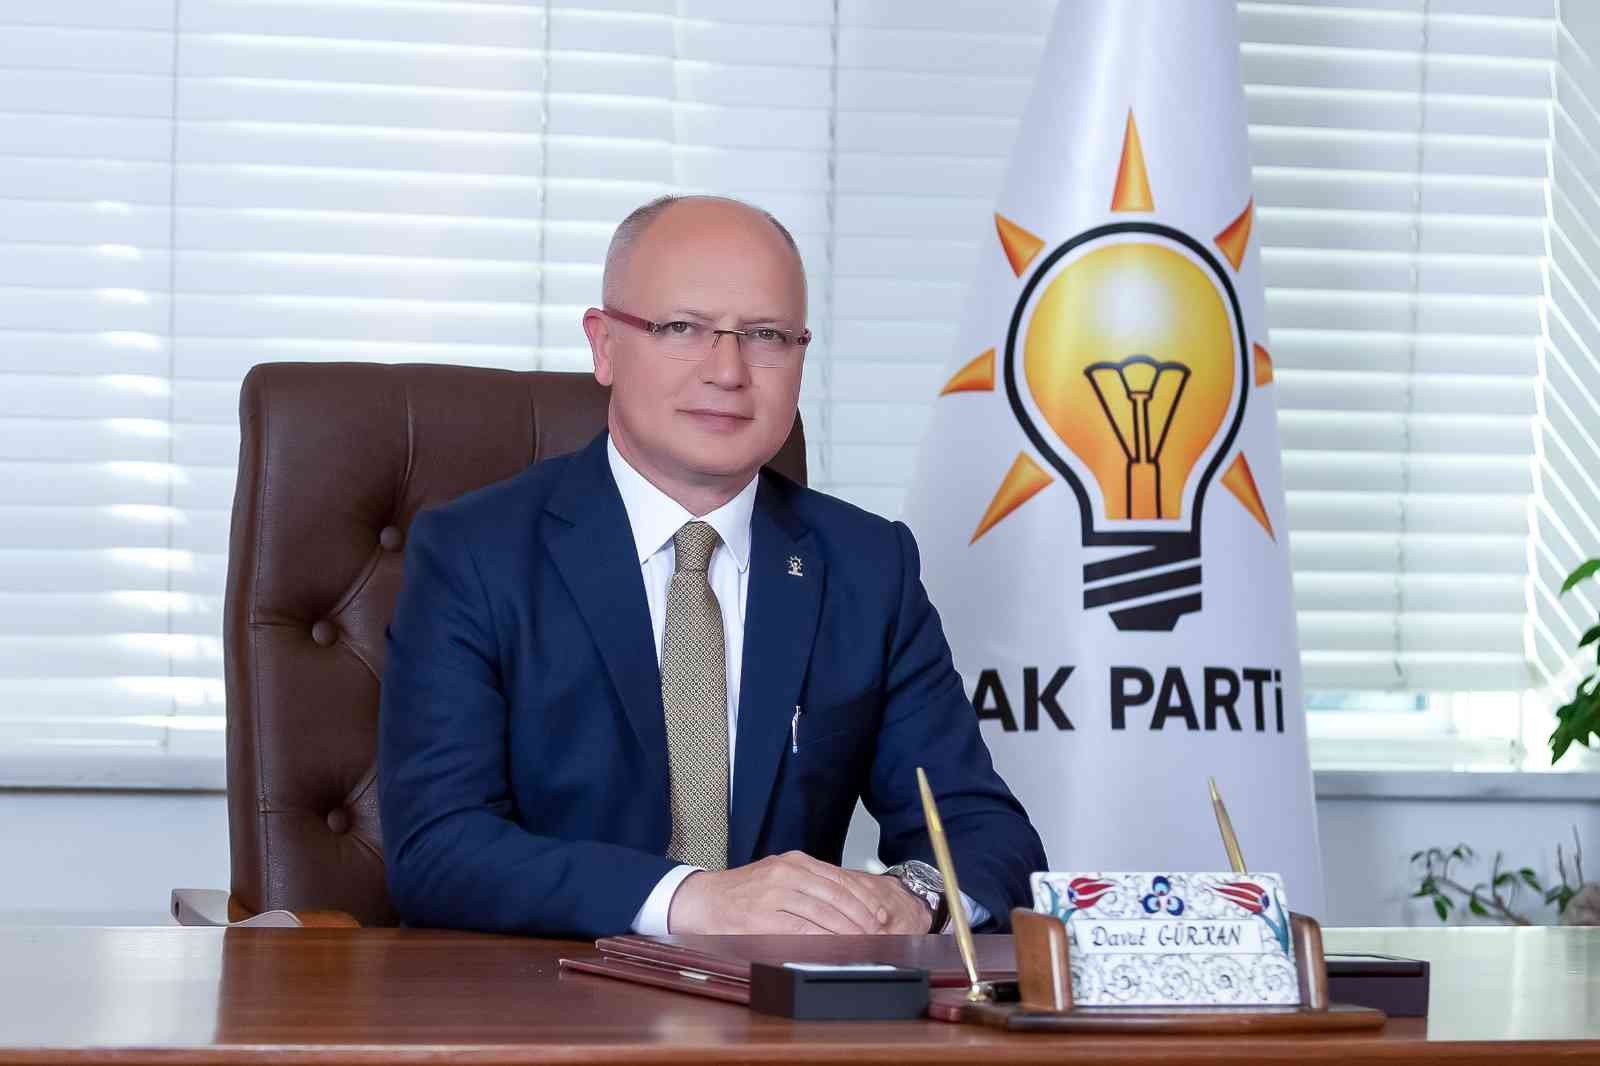 (Özel) Ak Parti Bursa İl Başkanı Gürkan: “Açıklanan Büyük Proje Çataltepeye İvme Kazandırır”